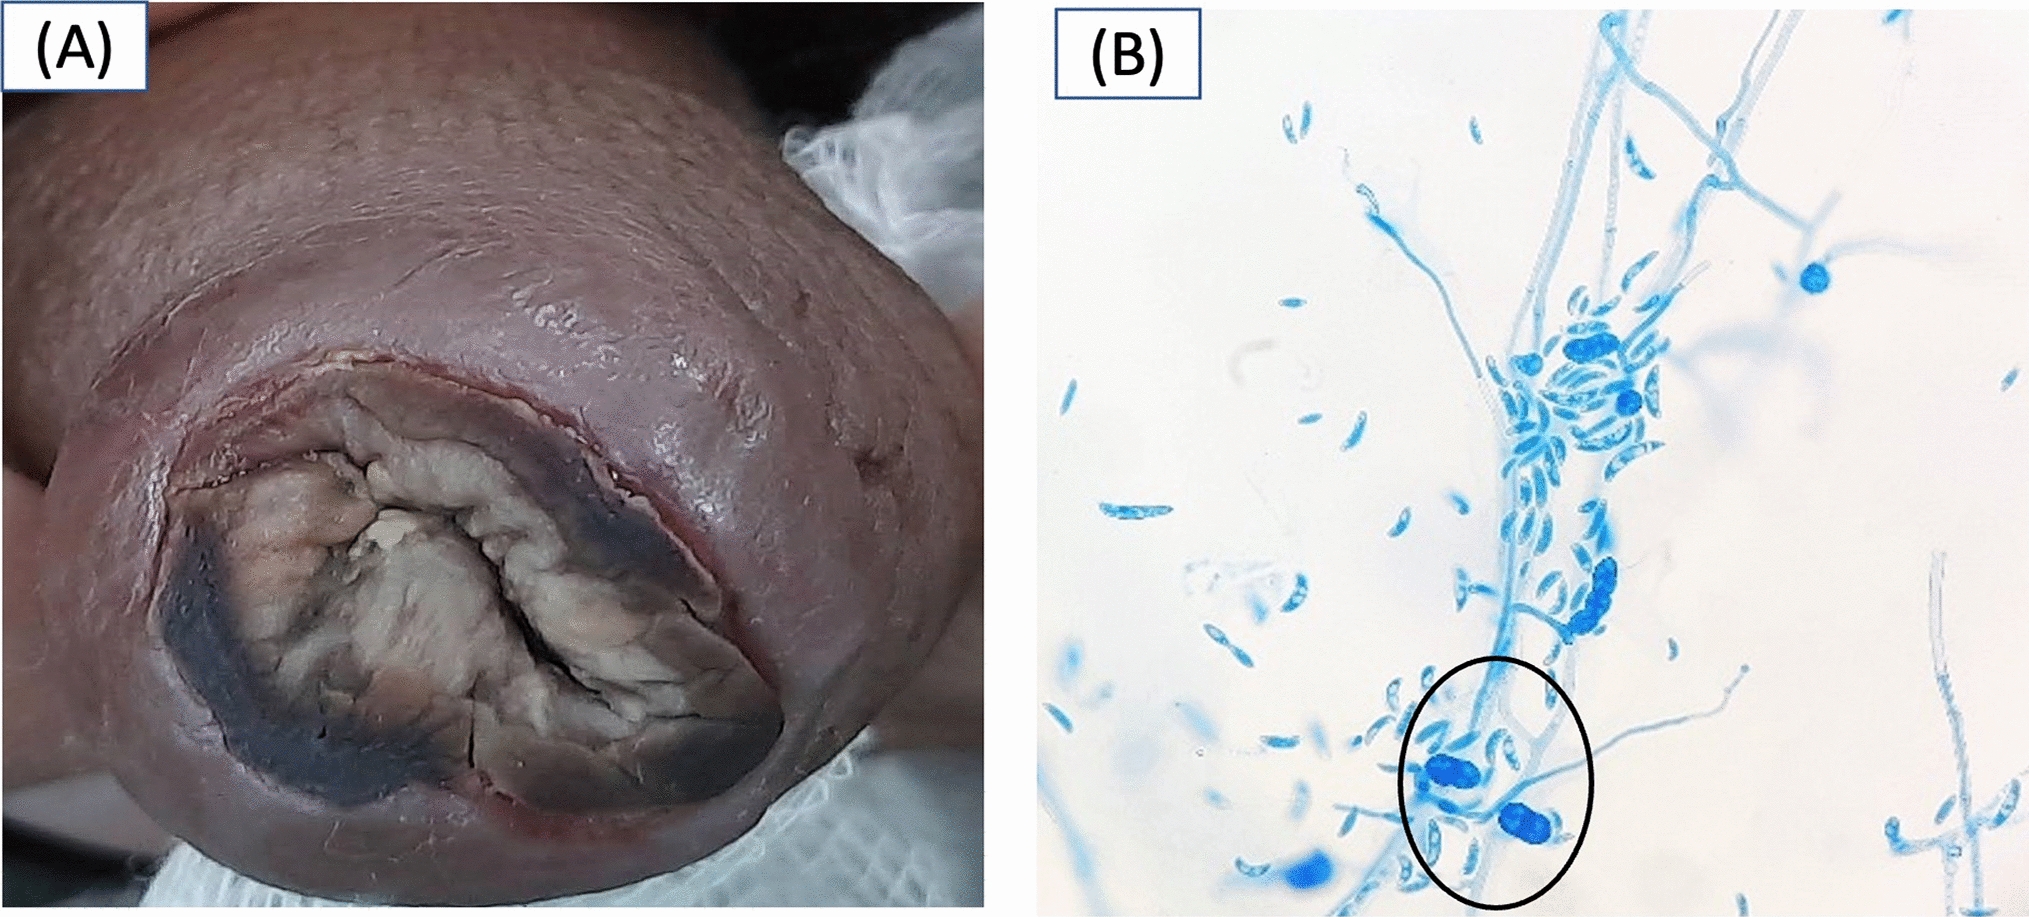 Fusarium infection on the penile prepuce in an allogeneic transplant recipient